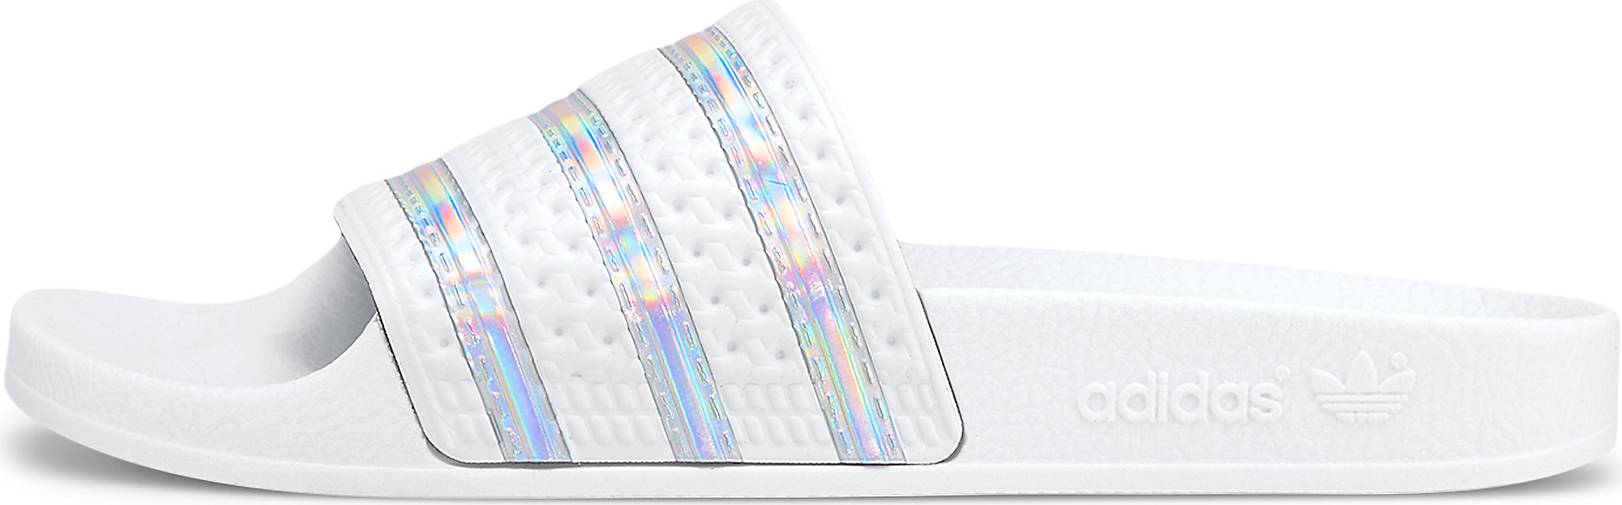 adidas Originals Badesandale ADILETTE W in weiß bestellen - 31706701